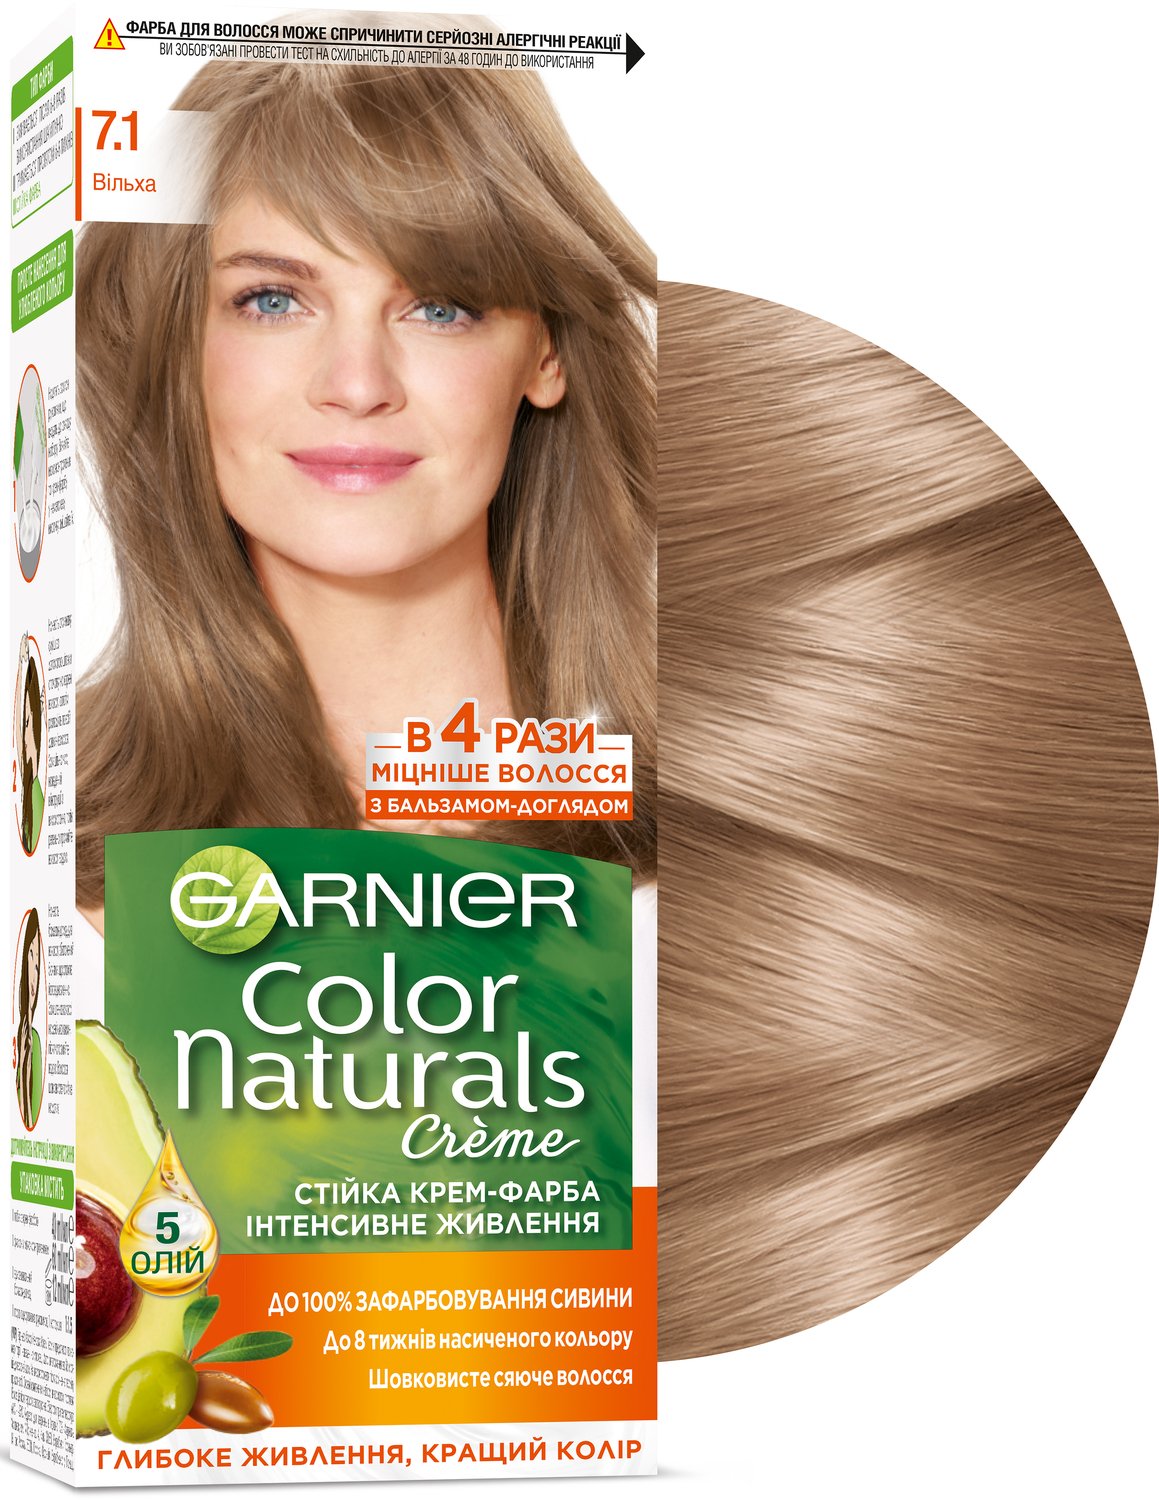 Краска для волос garnier отзывы. Гарнер колор ,7.1. Гарнер краска 7.1. Краска гарньер колор 7.1. Краска Garnier Color naturals 7.1 ольха.